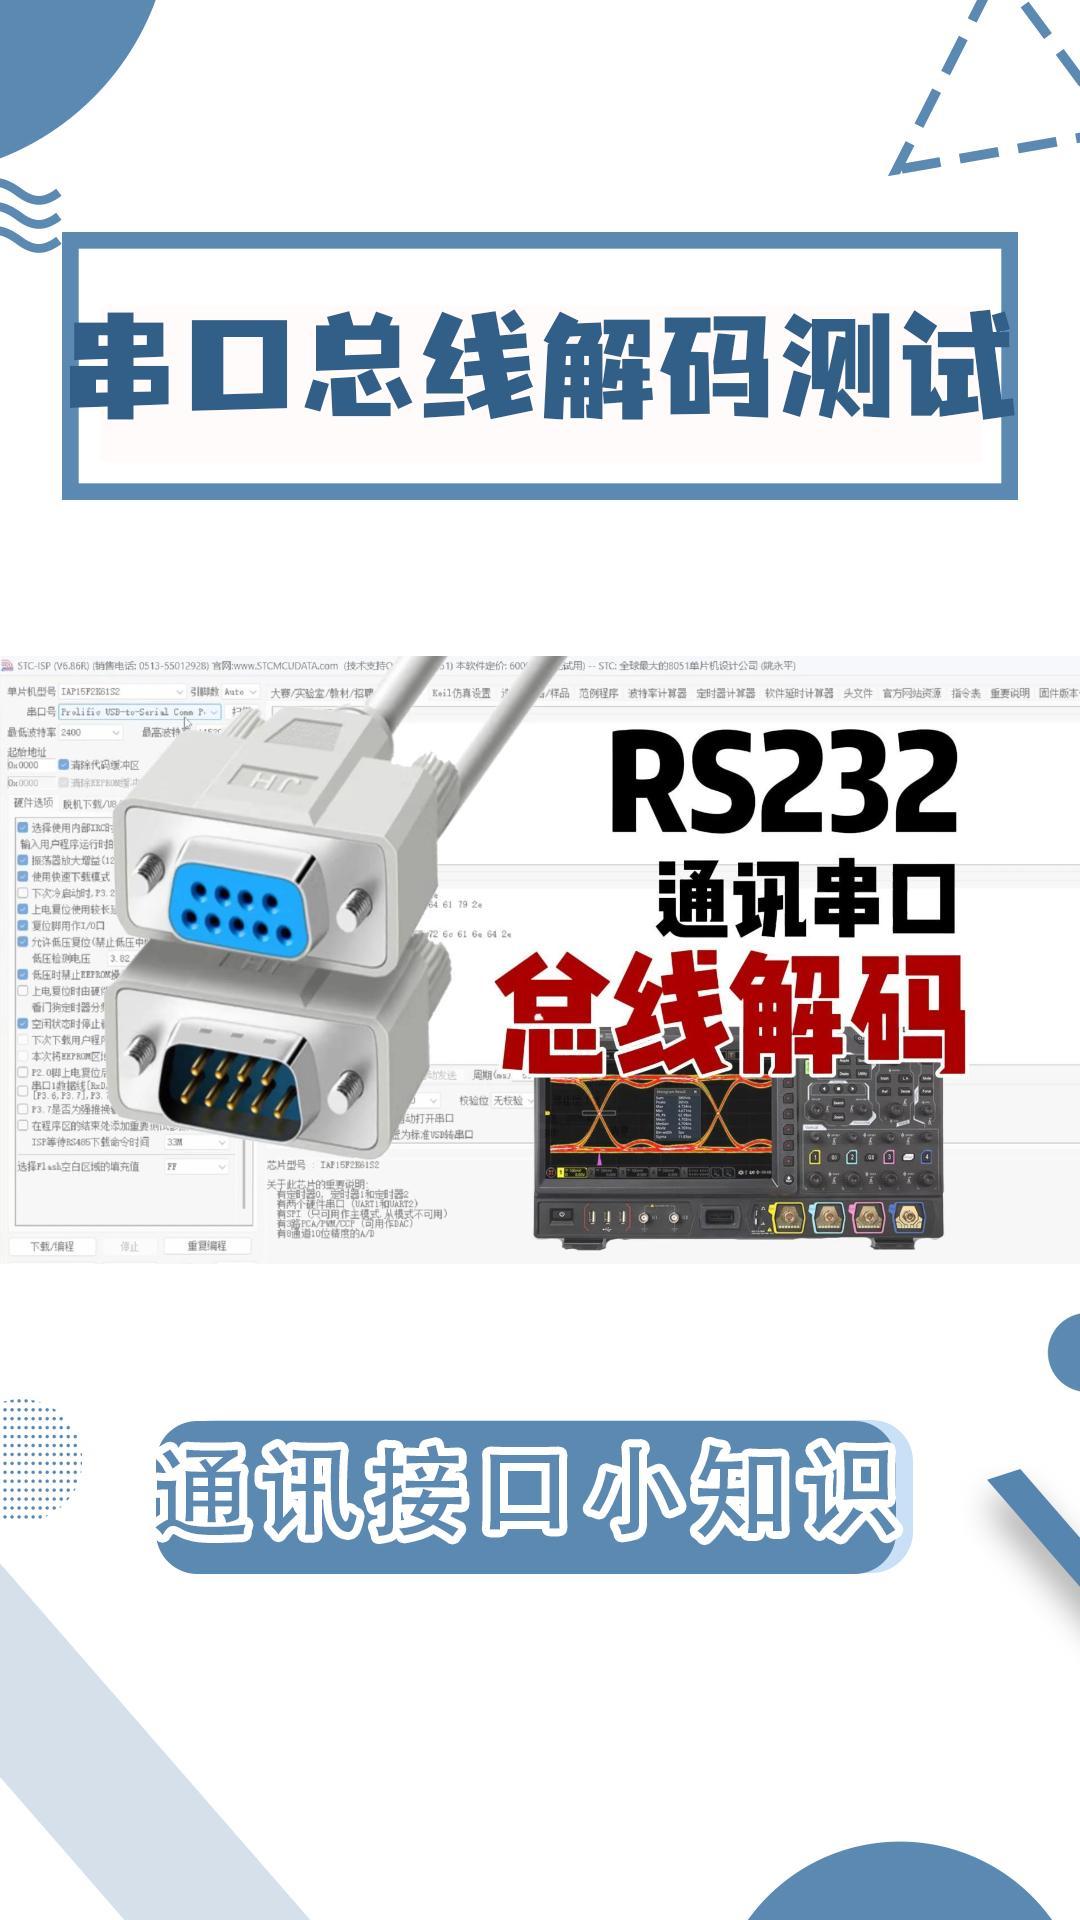 串口通讯|RS232串口总线解码测试|建议收藏#示波器 #电路知识 #rs232 #串口通讯 #总线 #电工 